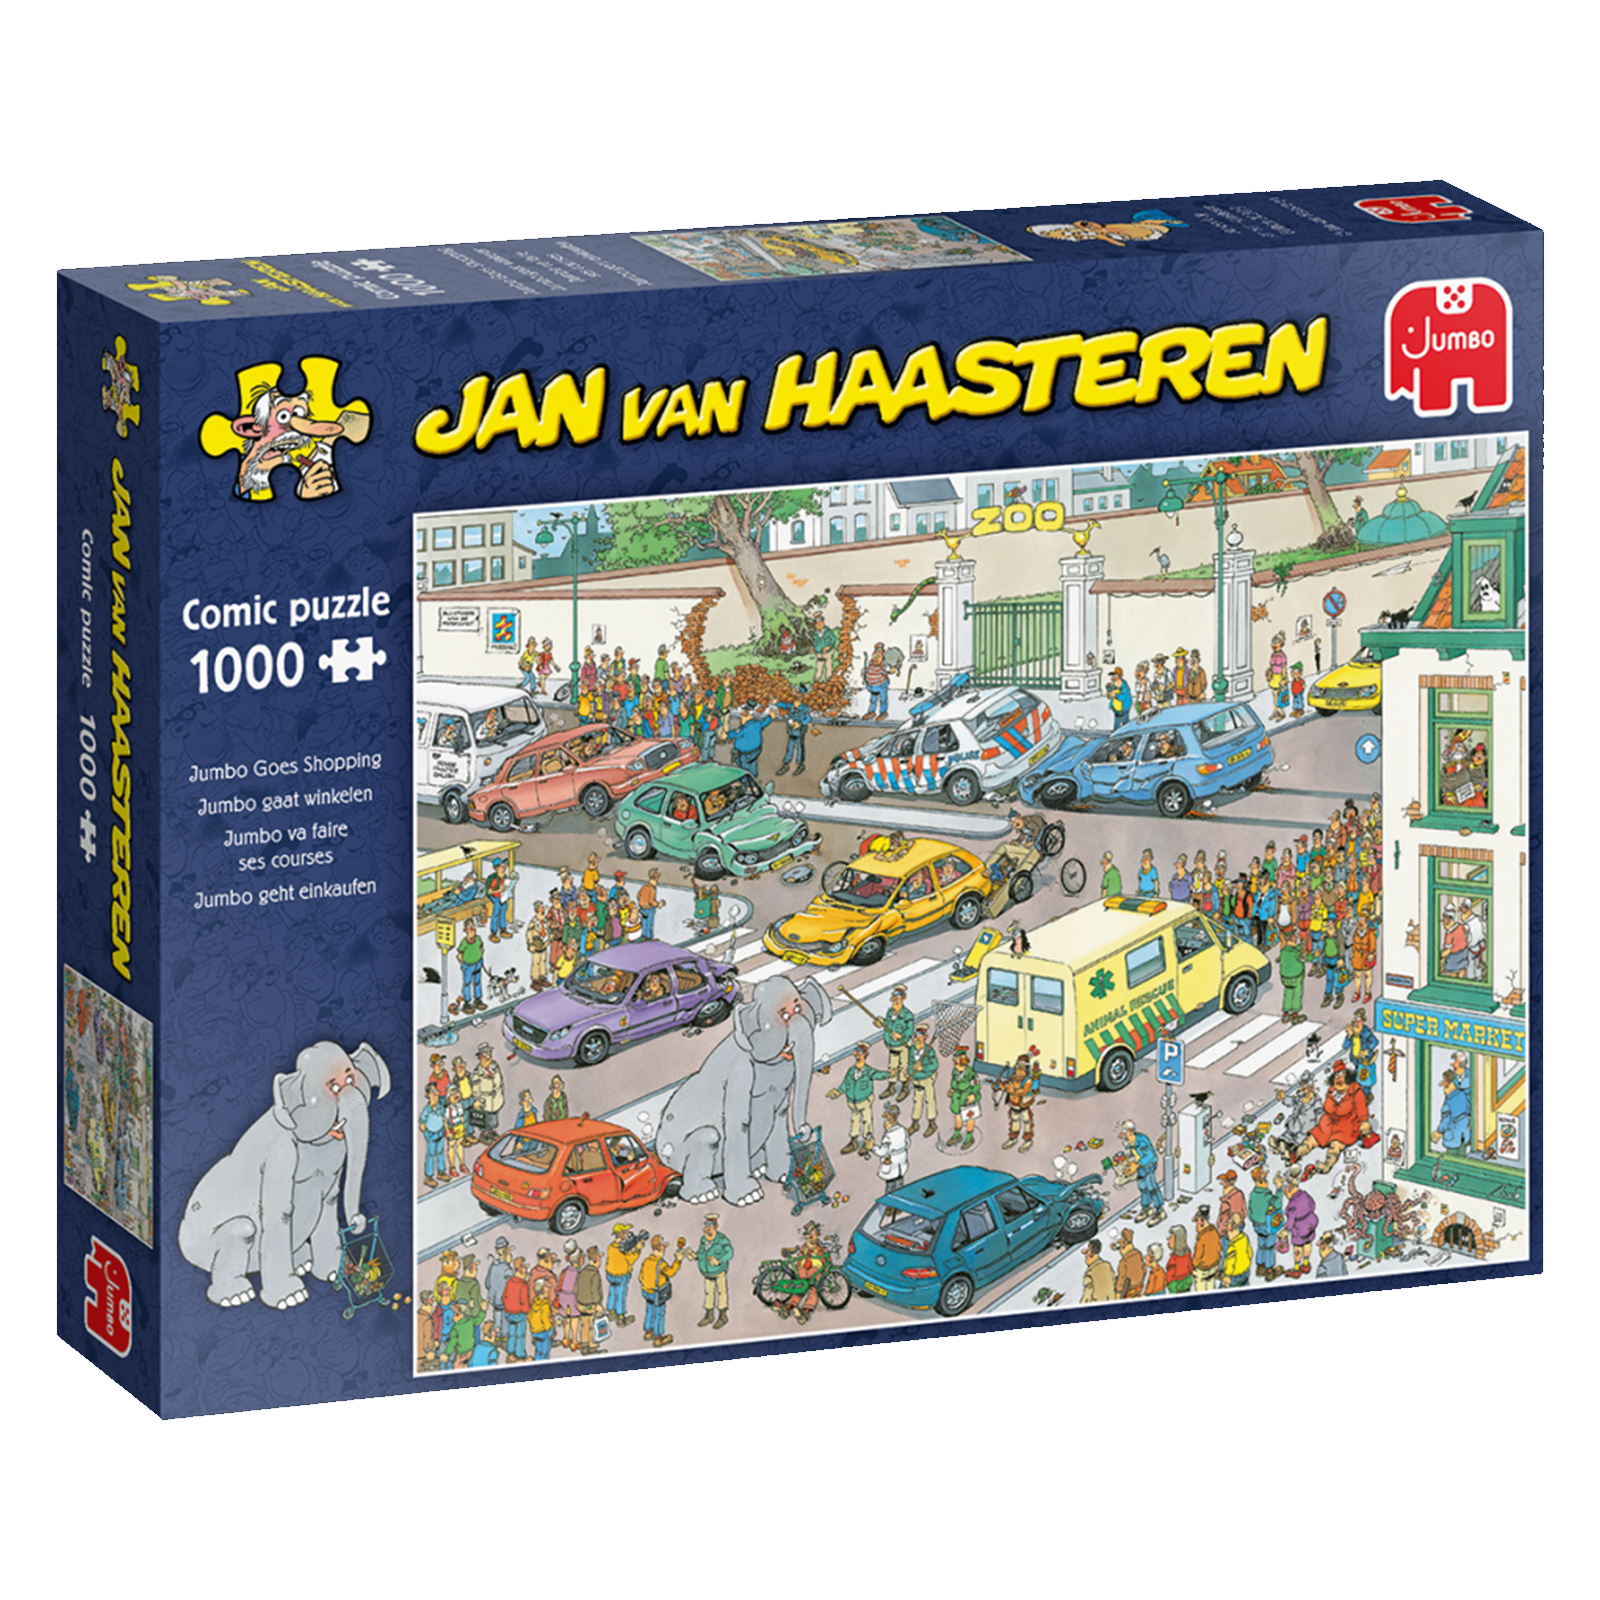 Se Jan van Haasteren - Jumbo på indkøb (1000 brikker) hos Lad-os-Spille.dk